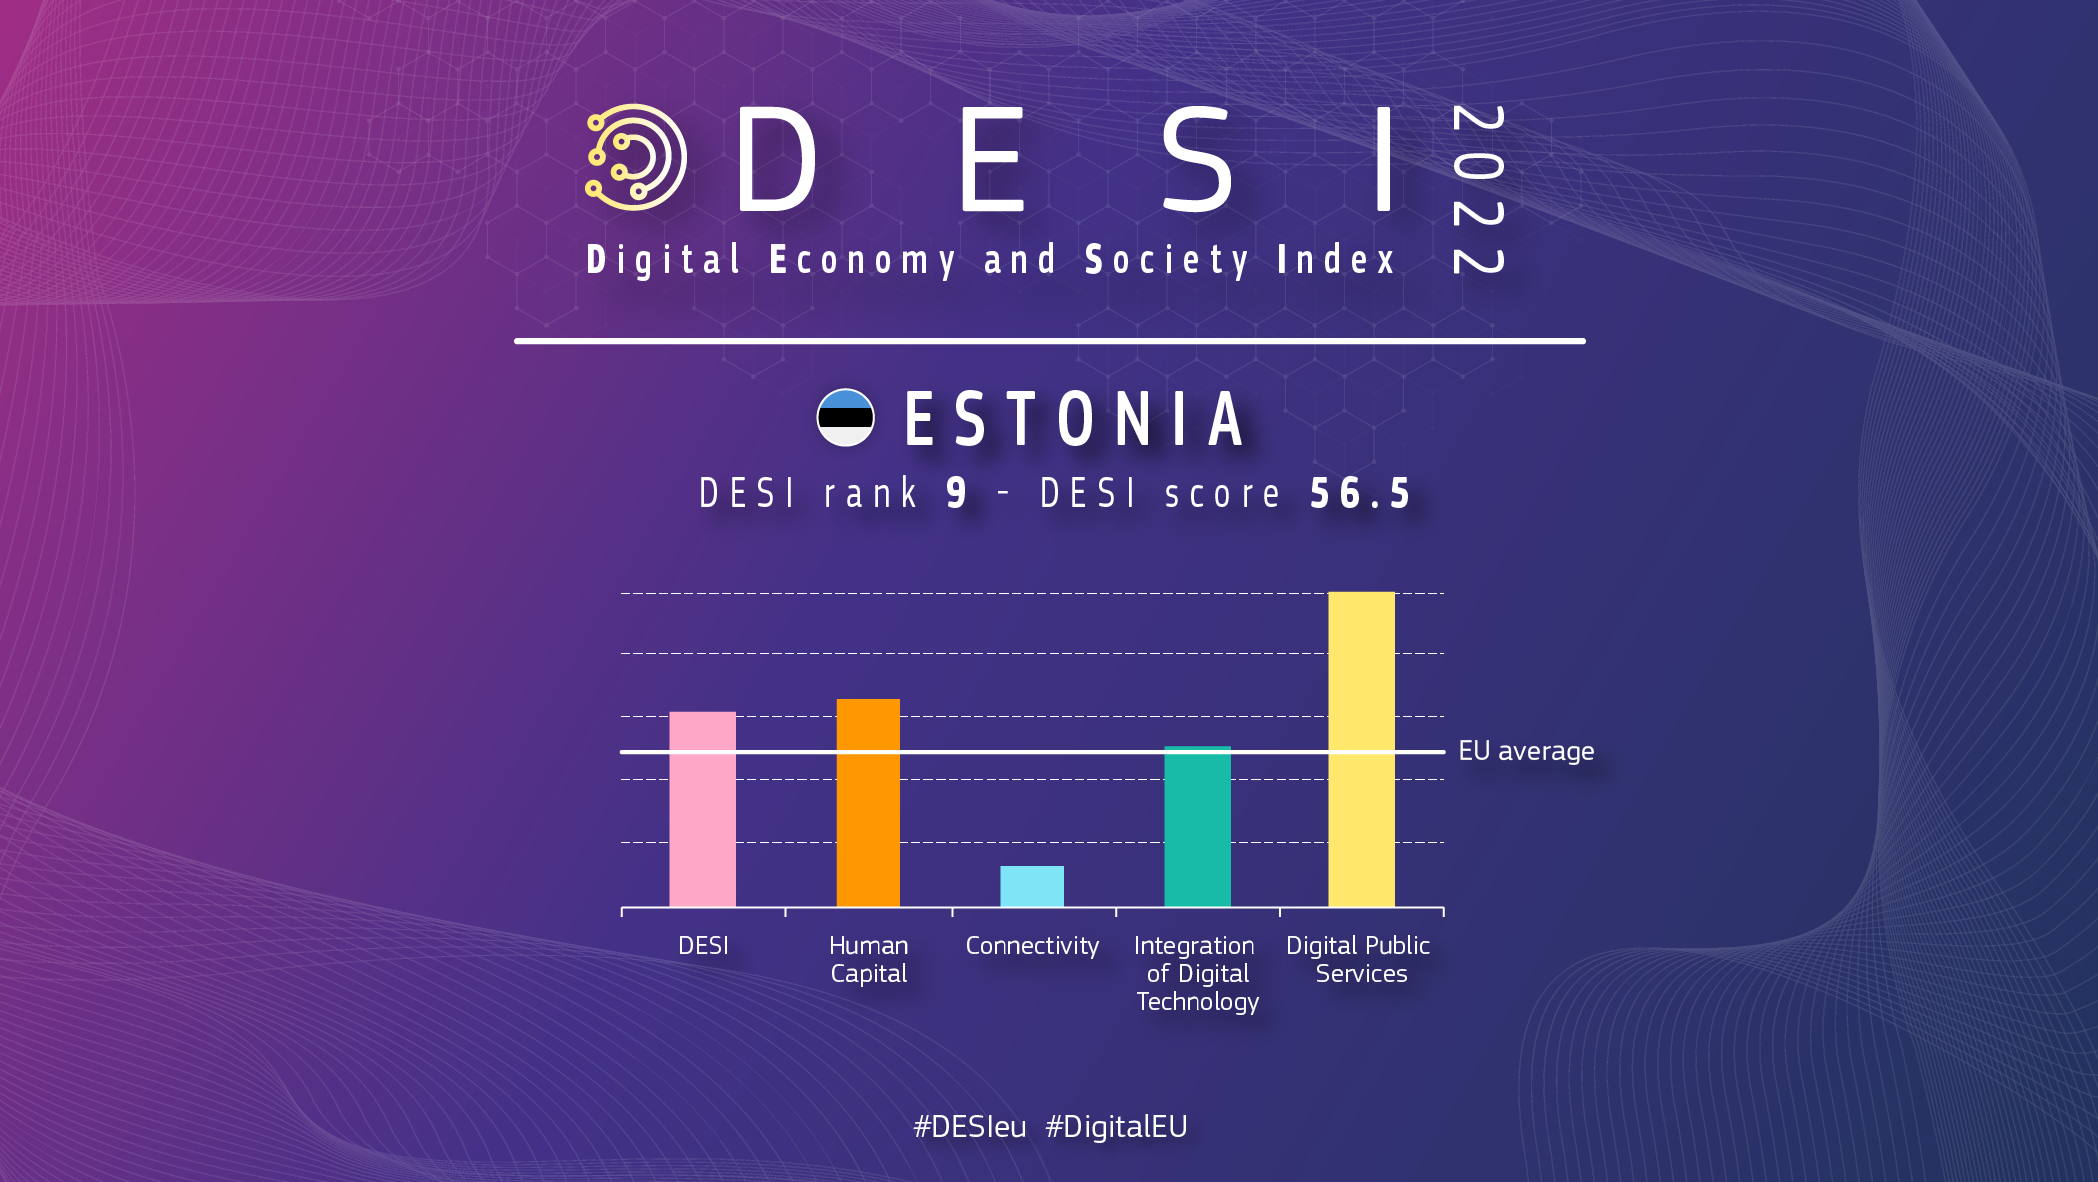 Grafisk oversigt over Estland i DESI viser en placering på 9 og en score på 56,5